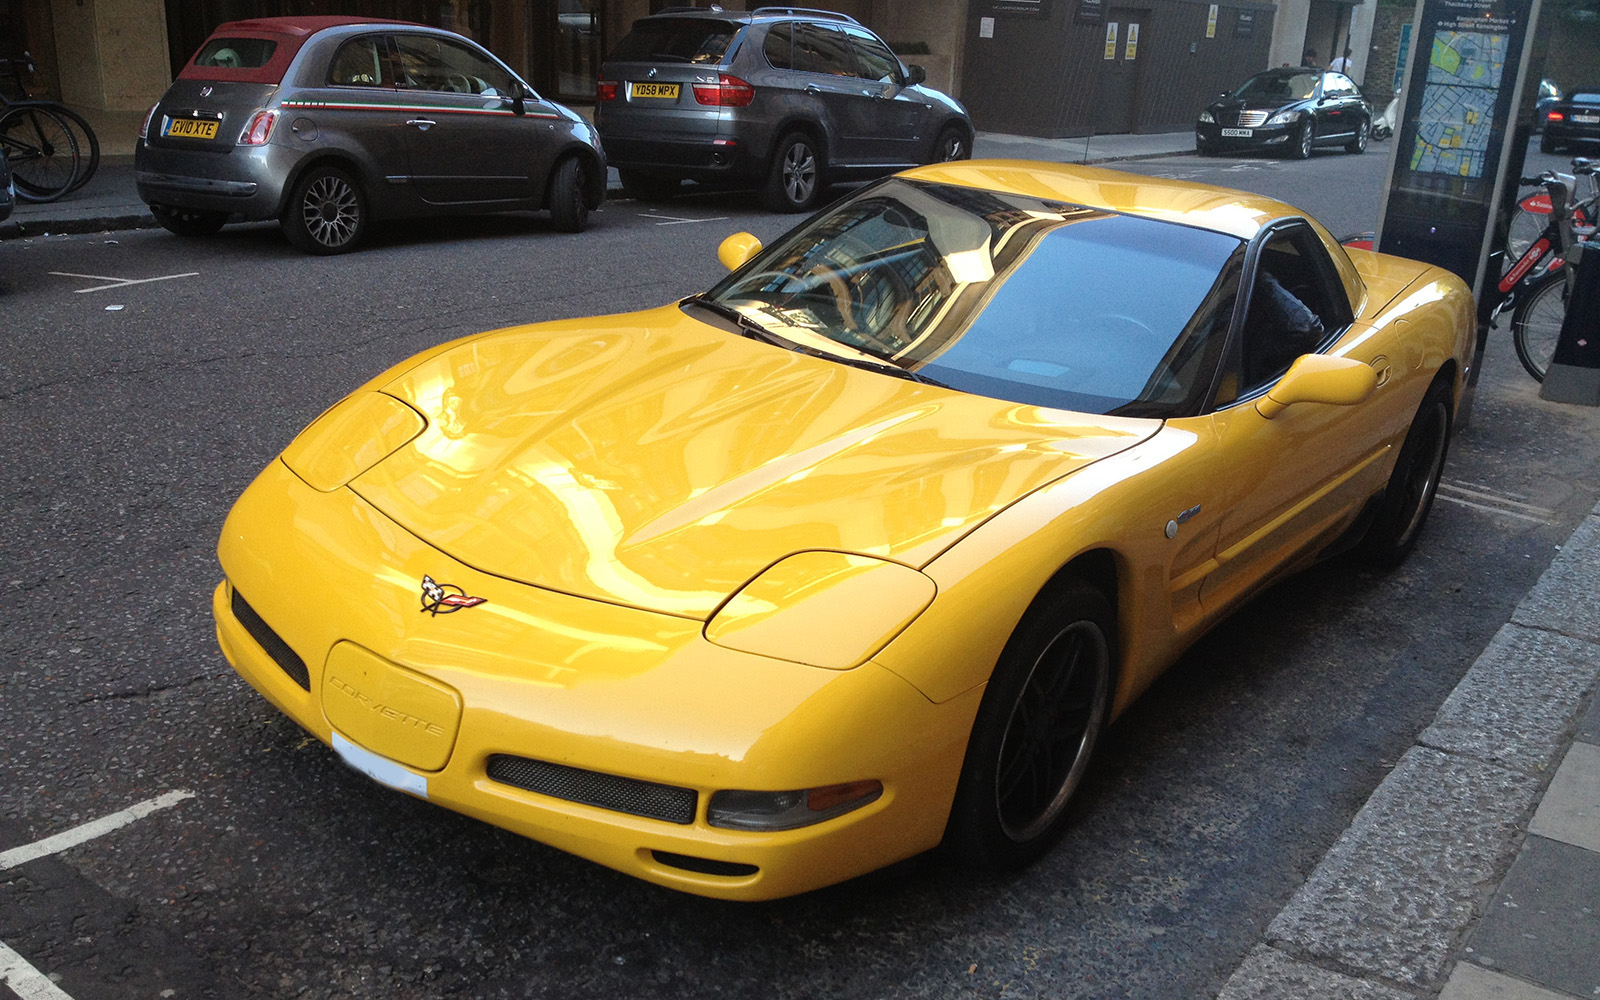 Corvette, June 2015, High Street Kensington